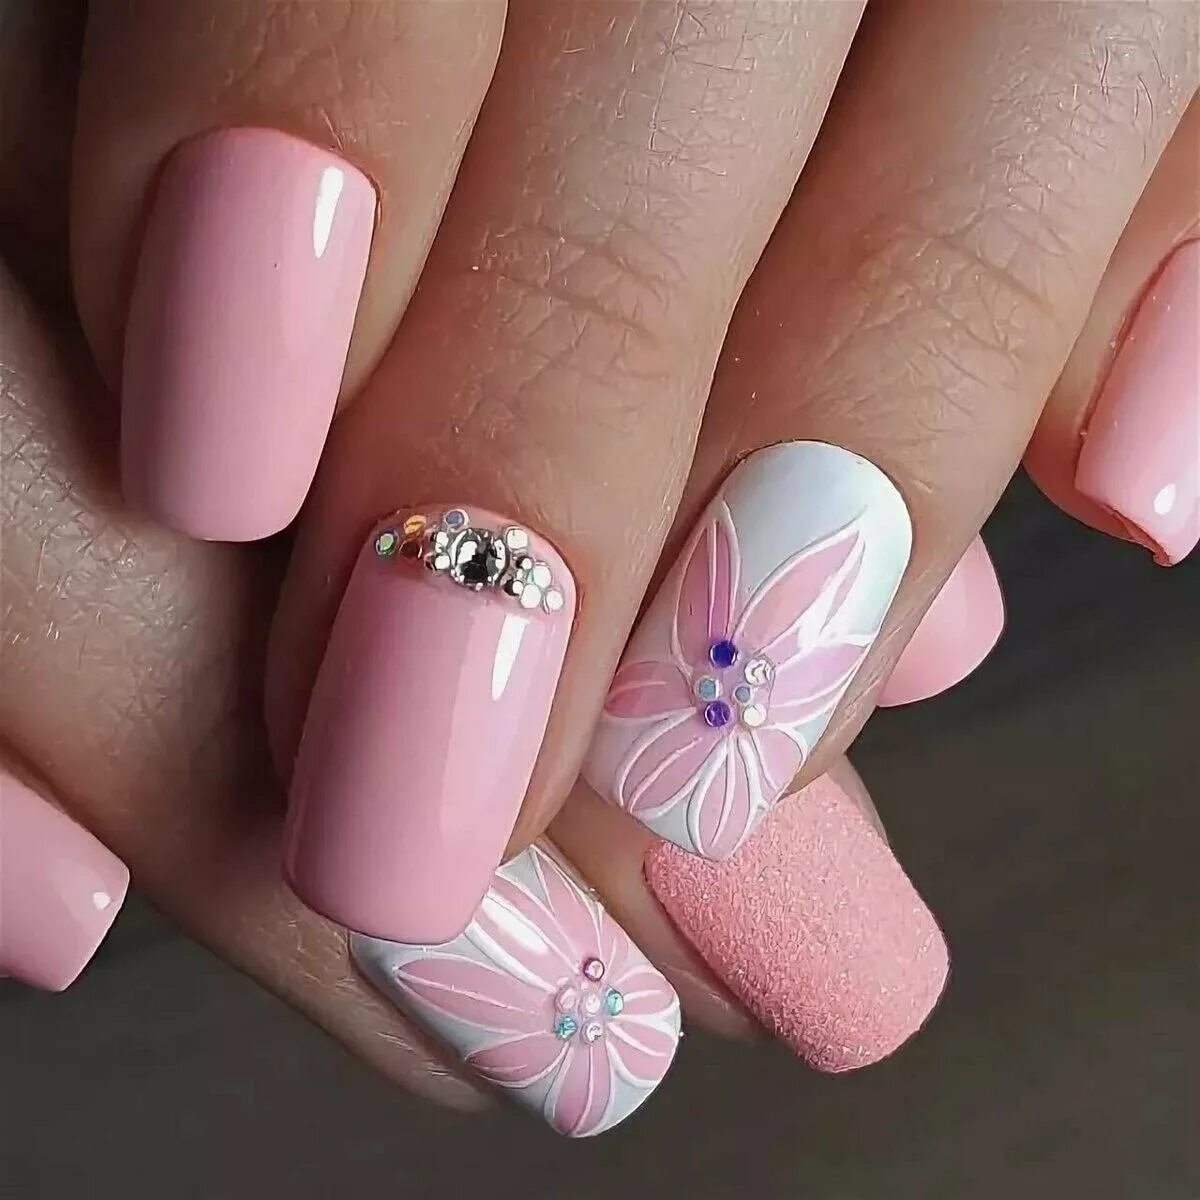 Розовый маникюр. Р̸о̸з̸о̸в̸ы̸й̸ м̸а̸н̸и̸к̸. Красивые ногти. Красивые ногти на лето. Самые красивые ногти на весну